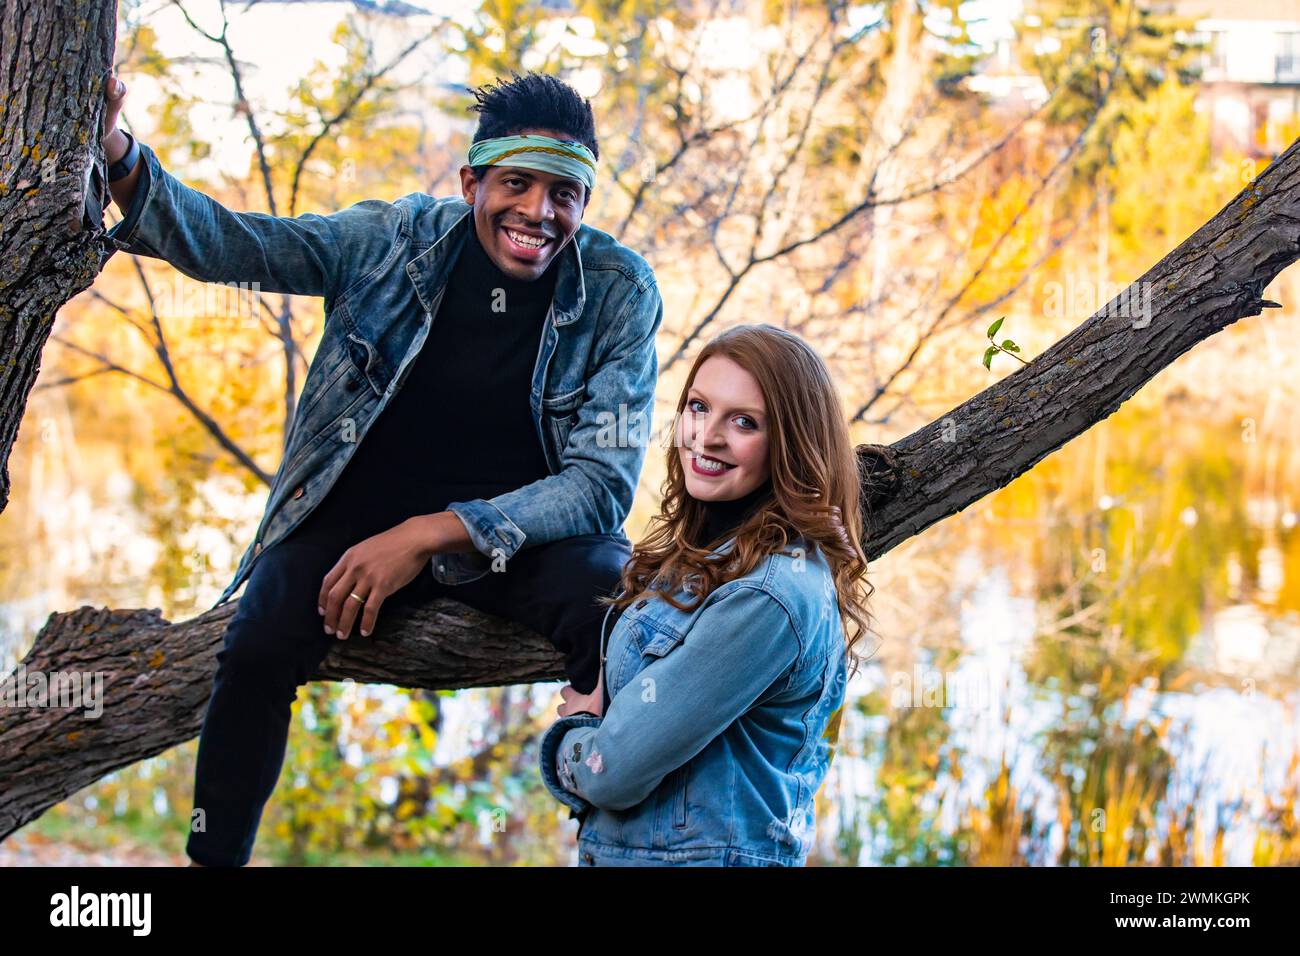 Nahaufnahme eines Paares gemischter Rassen, das auf einem Baumzweig in die Kamera lächelt und während einer Herbstfamilie ... wertvolle Zeit miteinander verbringt Stockfoto